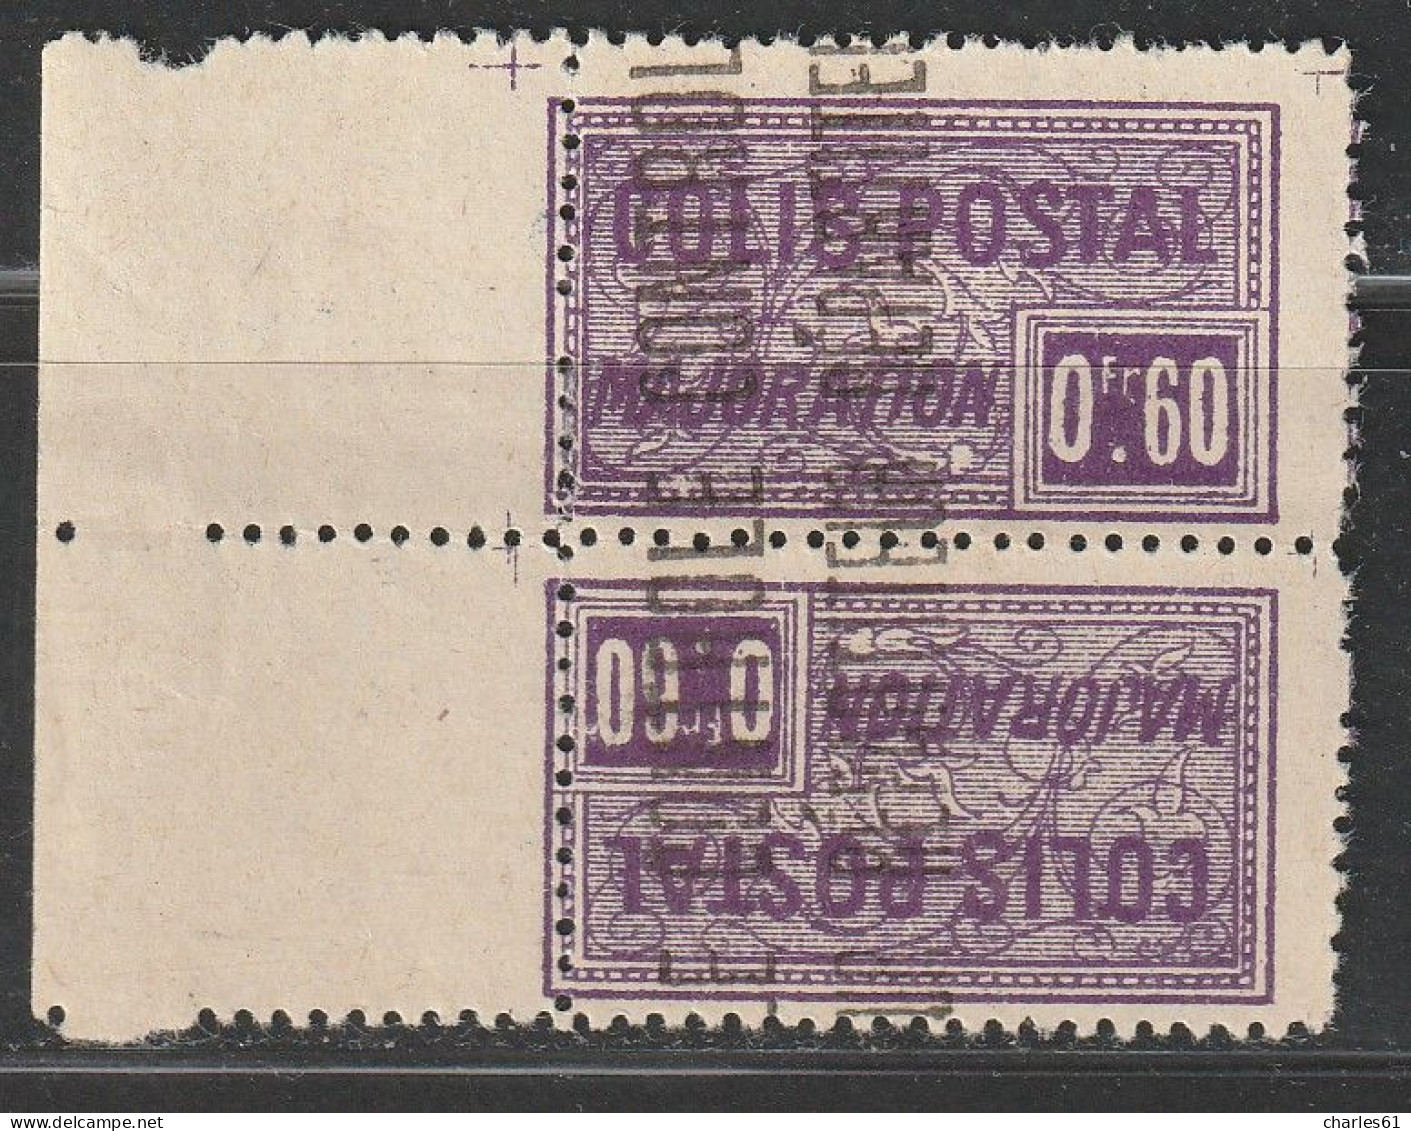 ALGERIE - COLIS POSTAUX - N°13a * (1924-27) 60c Violet - Tête-Bêche - - Colis Postaux